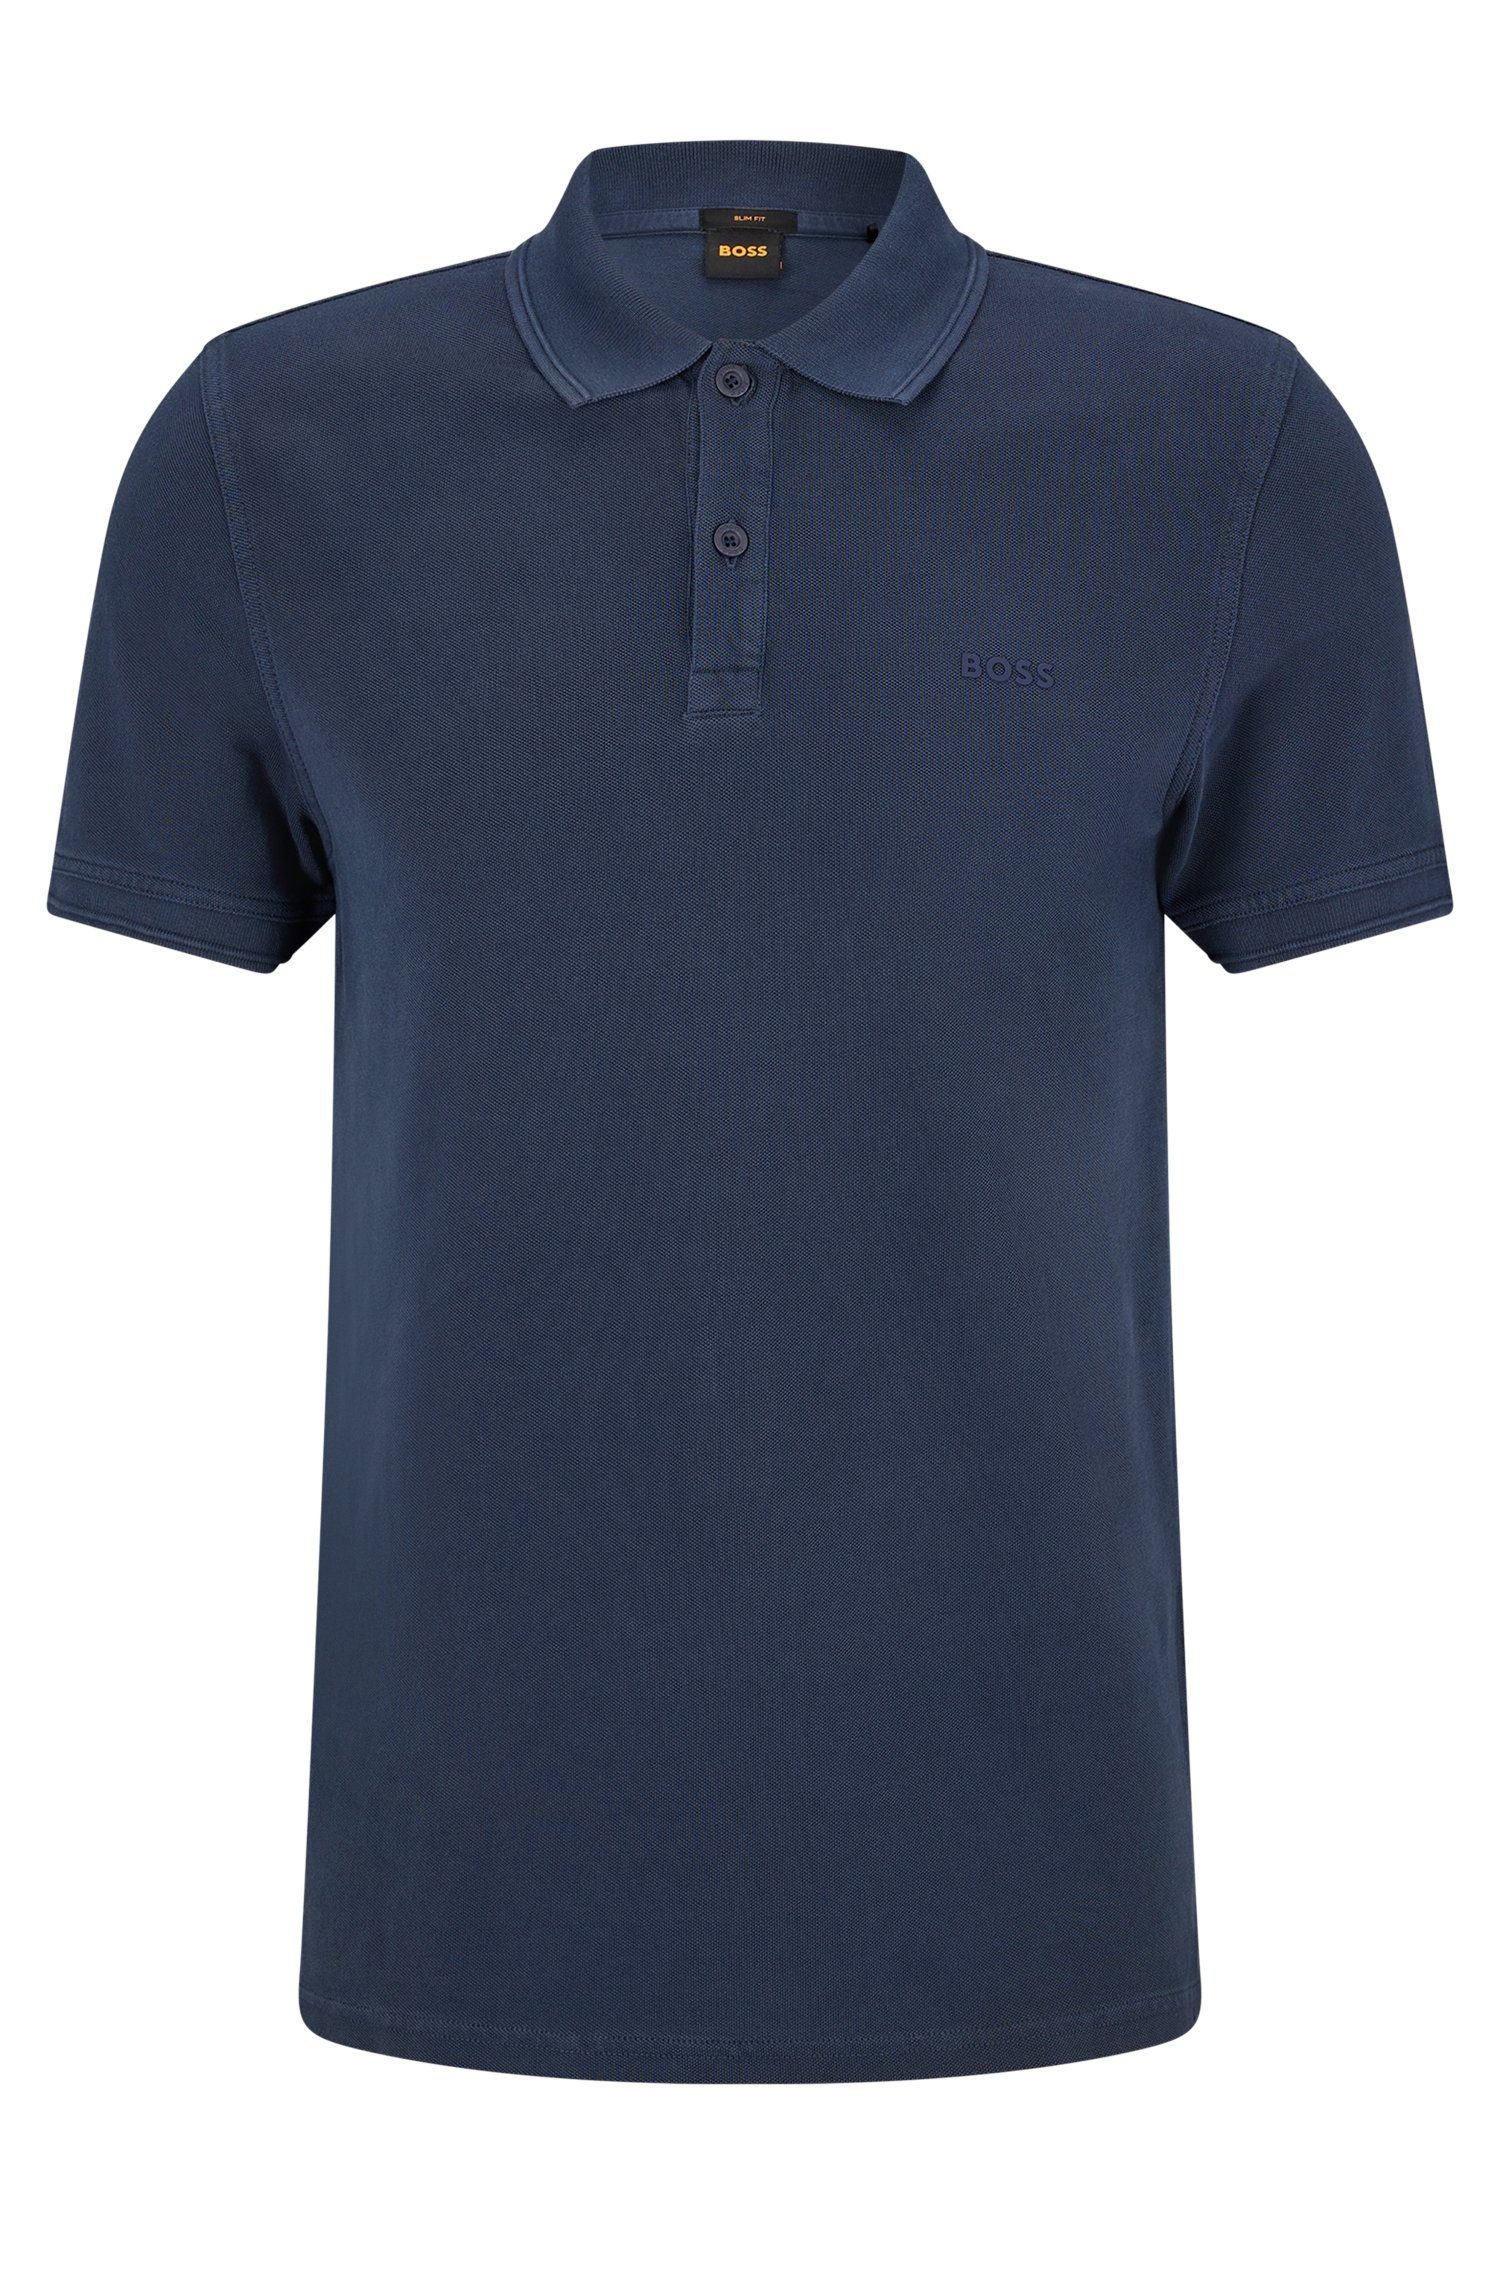 dezentem BOSS Poloshirt Prime 10203439 mit Brust der auf dunkelblau 01 ORANGE Logoschriftzug